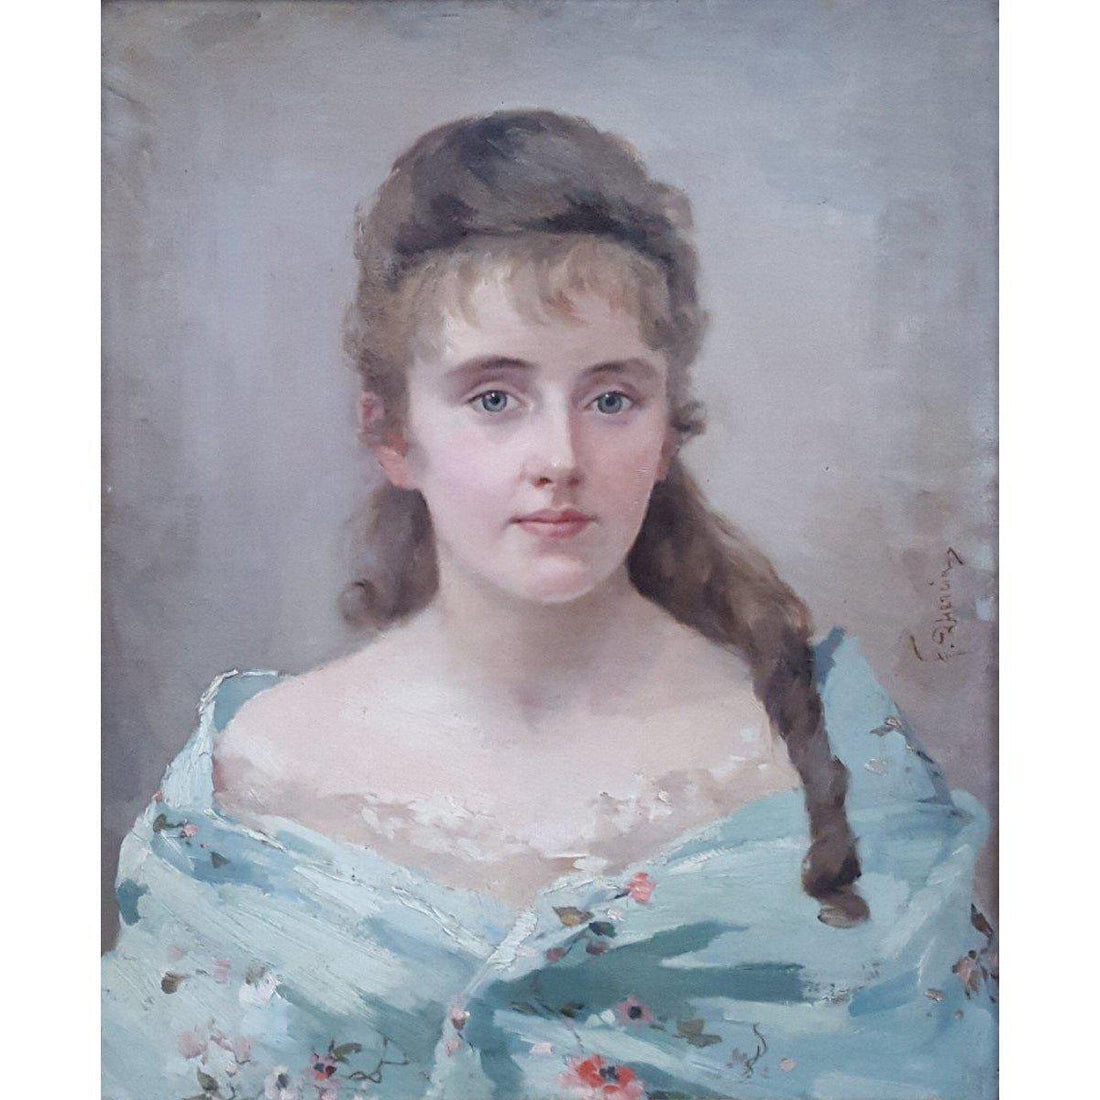 Federico Quercia – Portrait of a Woman, Circa 1900 - Winckelmann Gallery